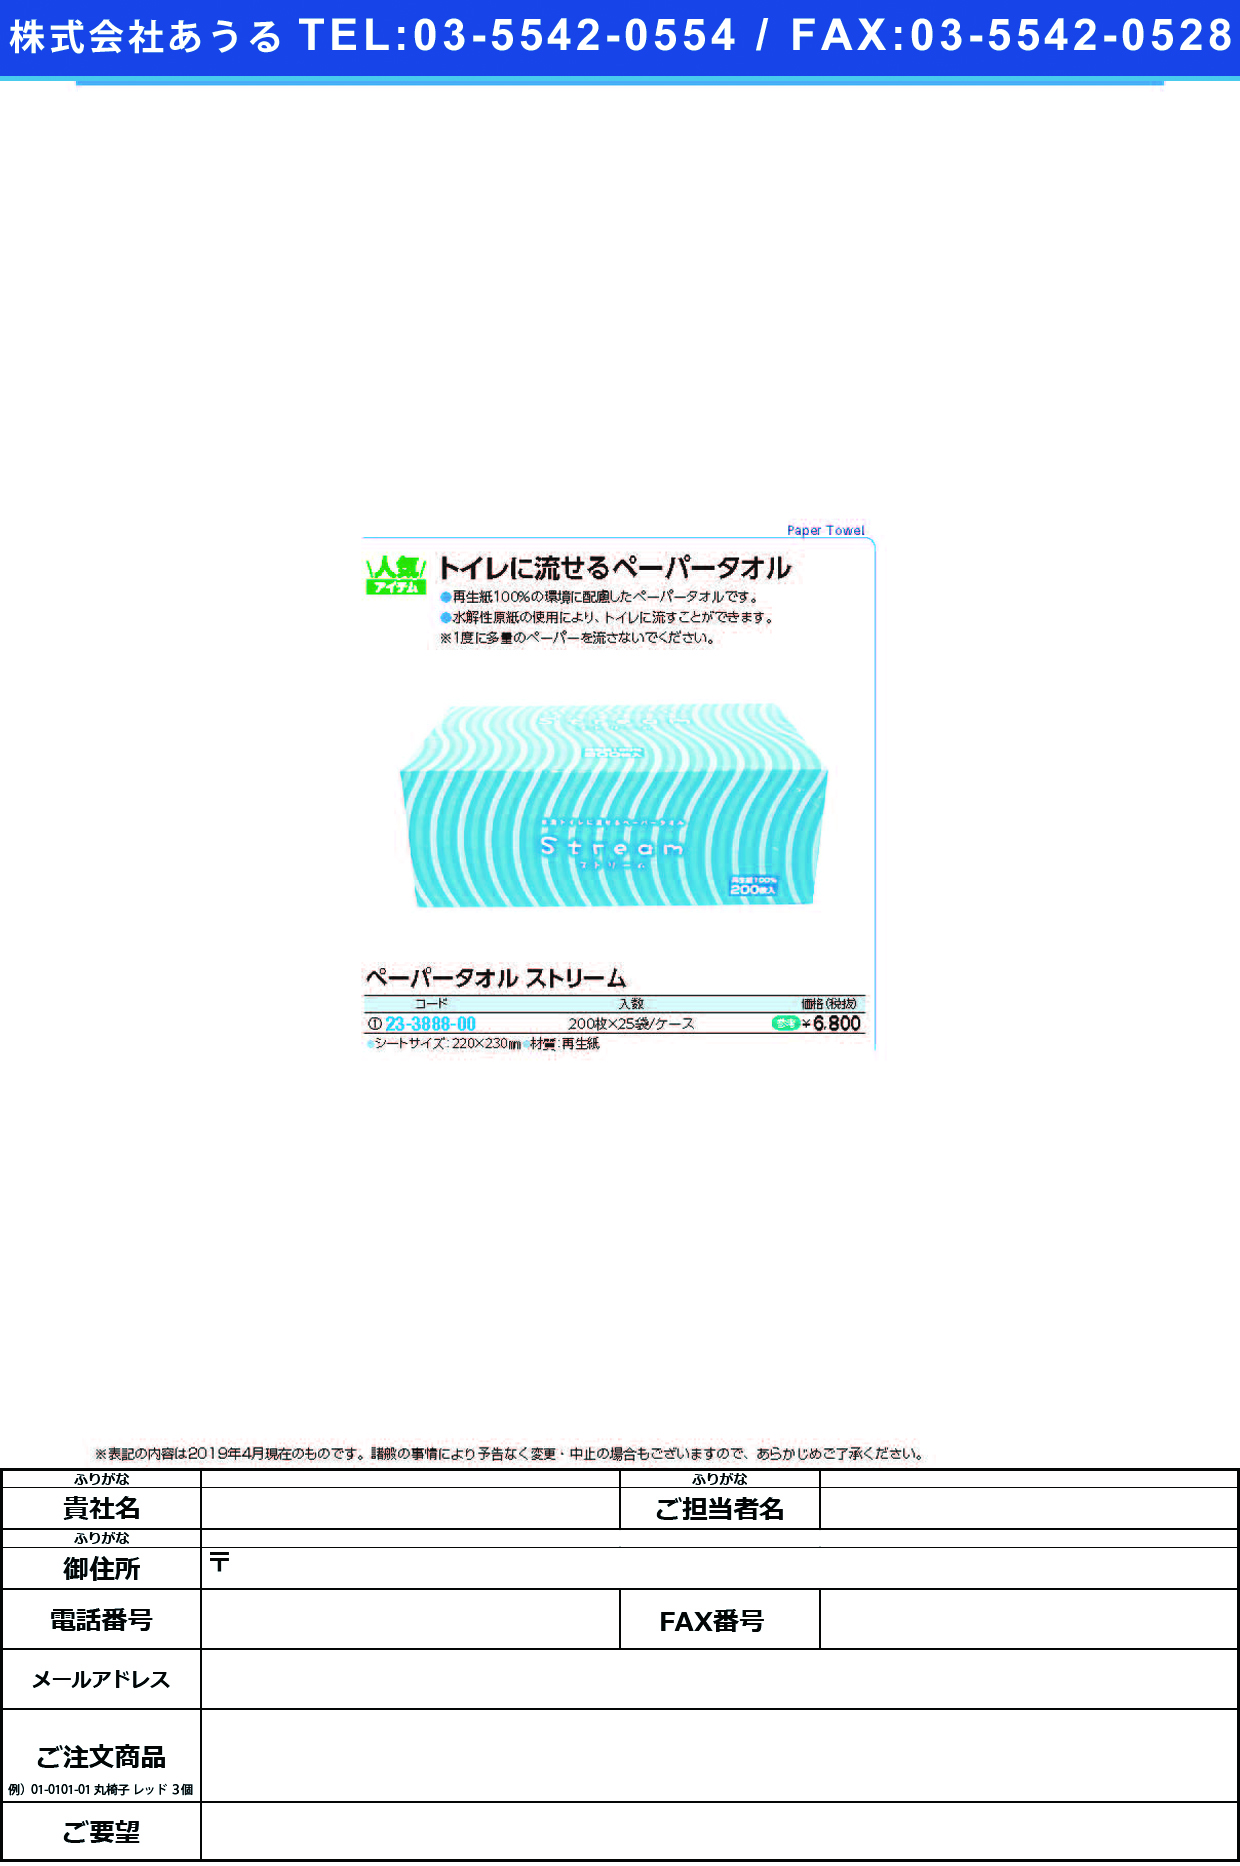 (23-3888-00)ペーパータオルストリーム 6256(200ﾏｲX25ﾌｸﾛ) ﾍﾟｰﾊﾟｰﾀｵﾙｽﾄﾘｰﾑ【1梱単位】【2019年カタログ商品】